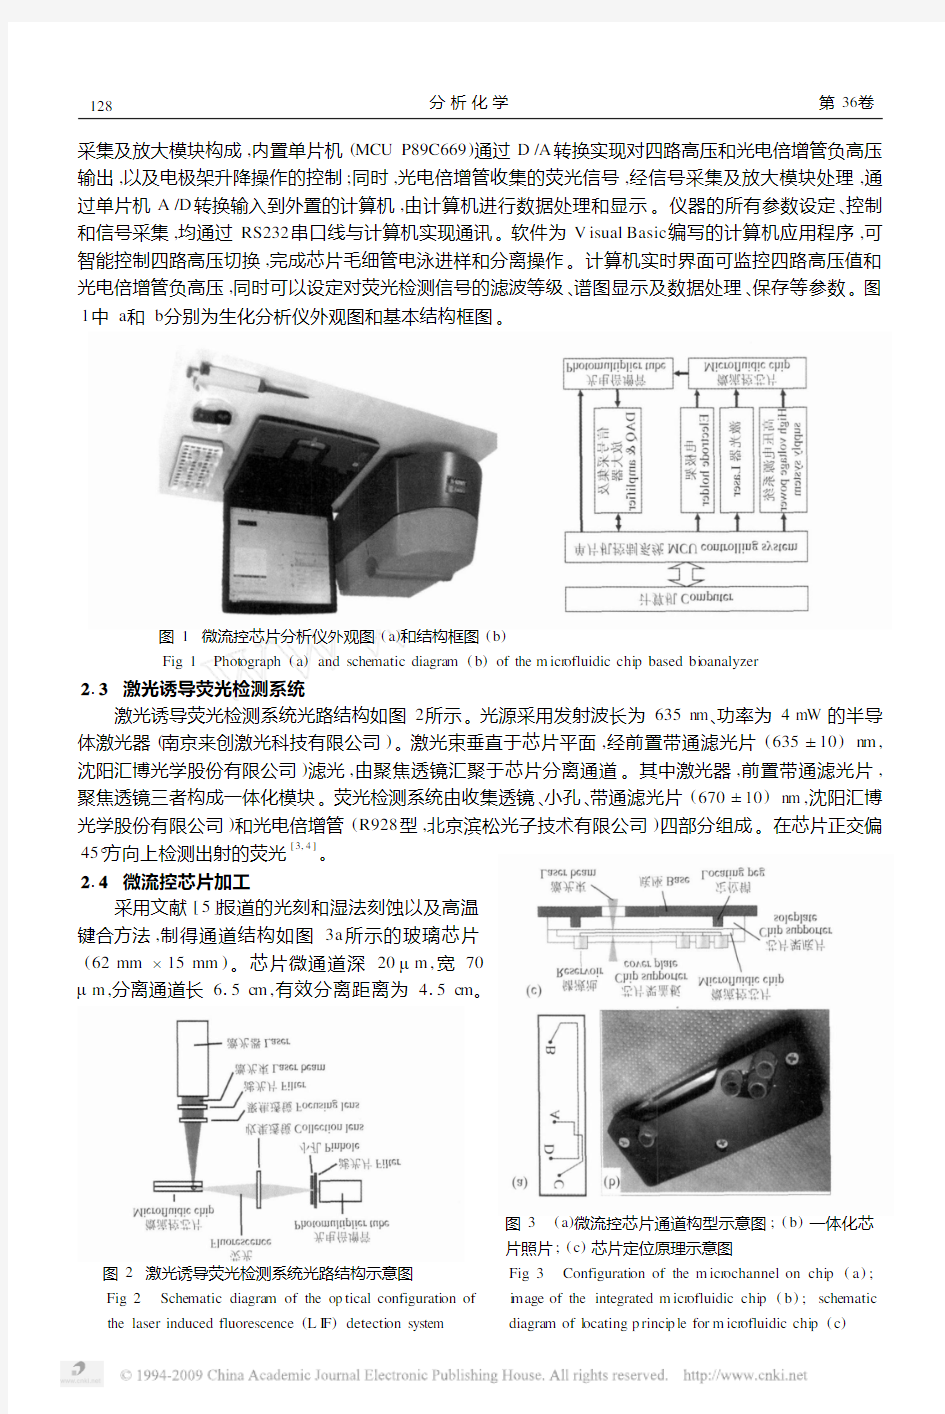 激光诱导荧光检测微流控芯片生化分析仪的研制